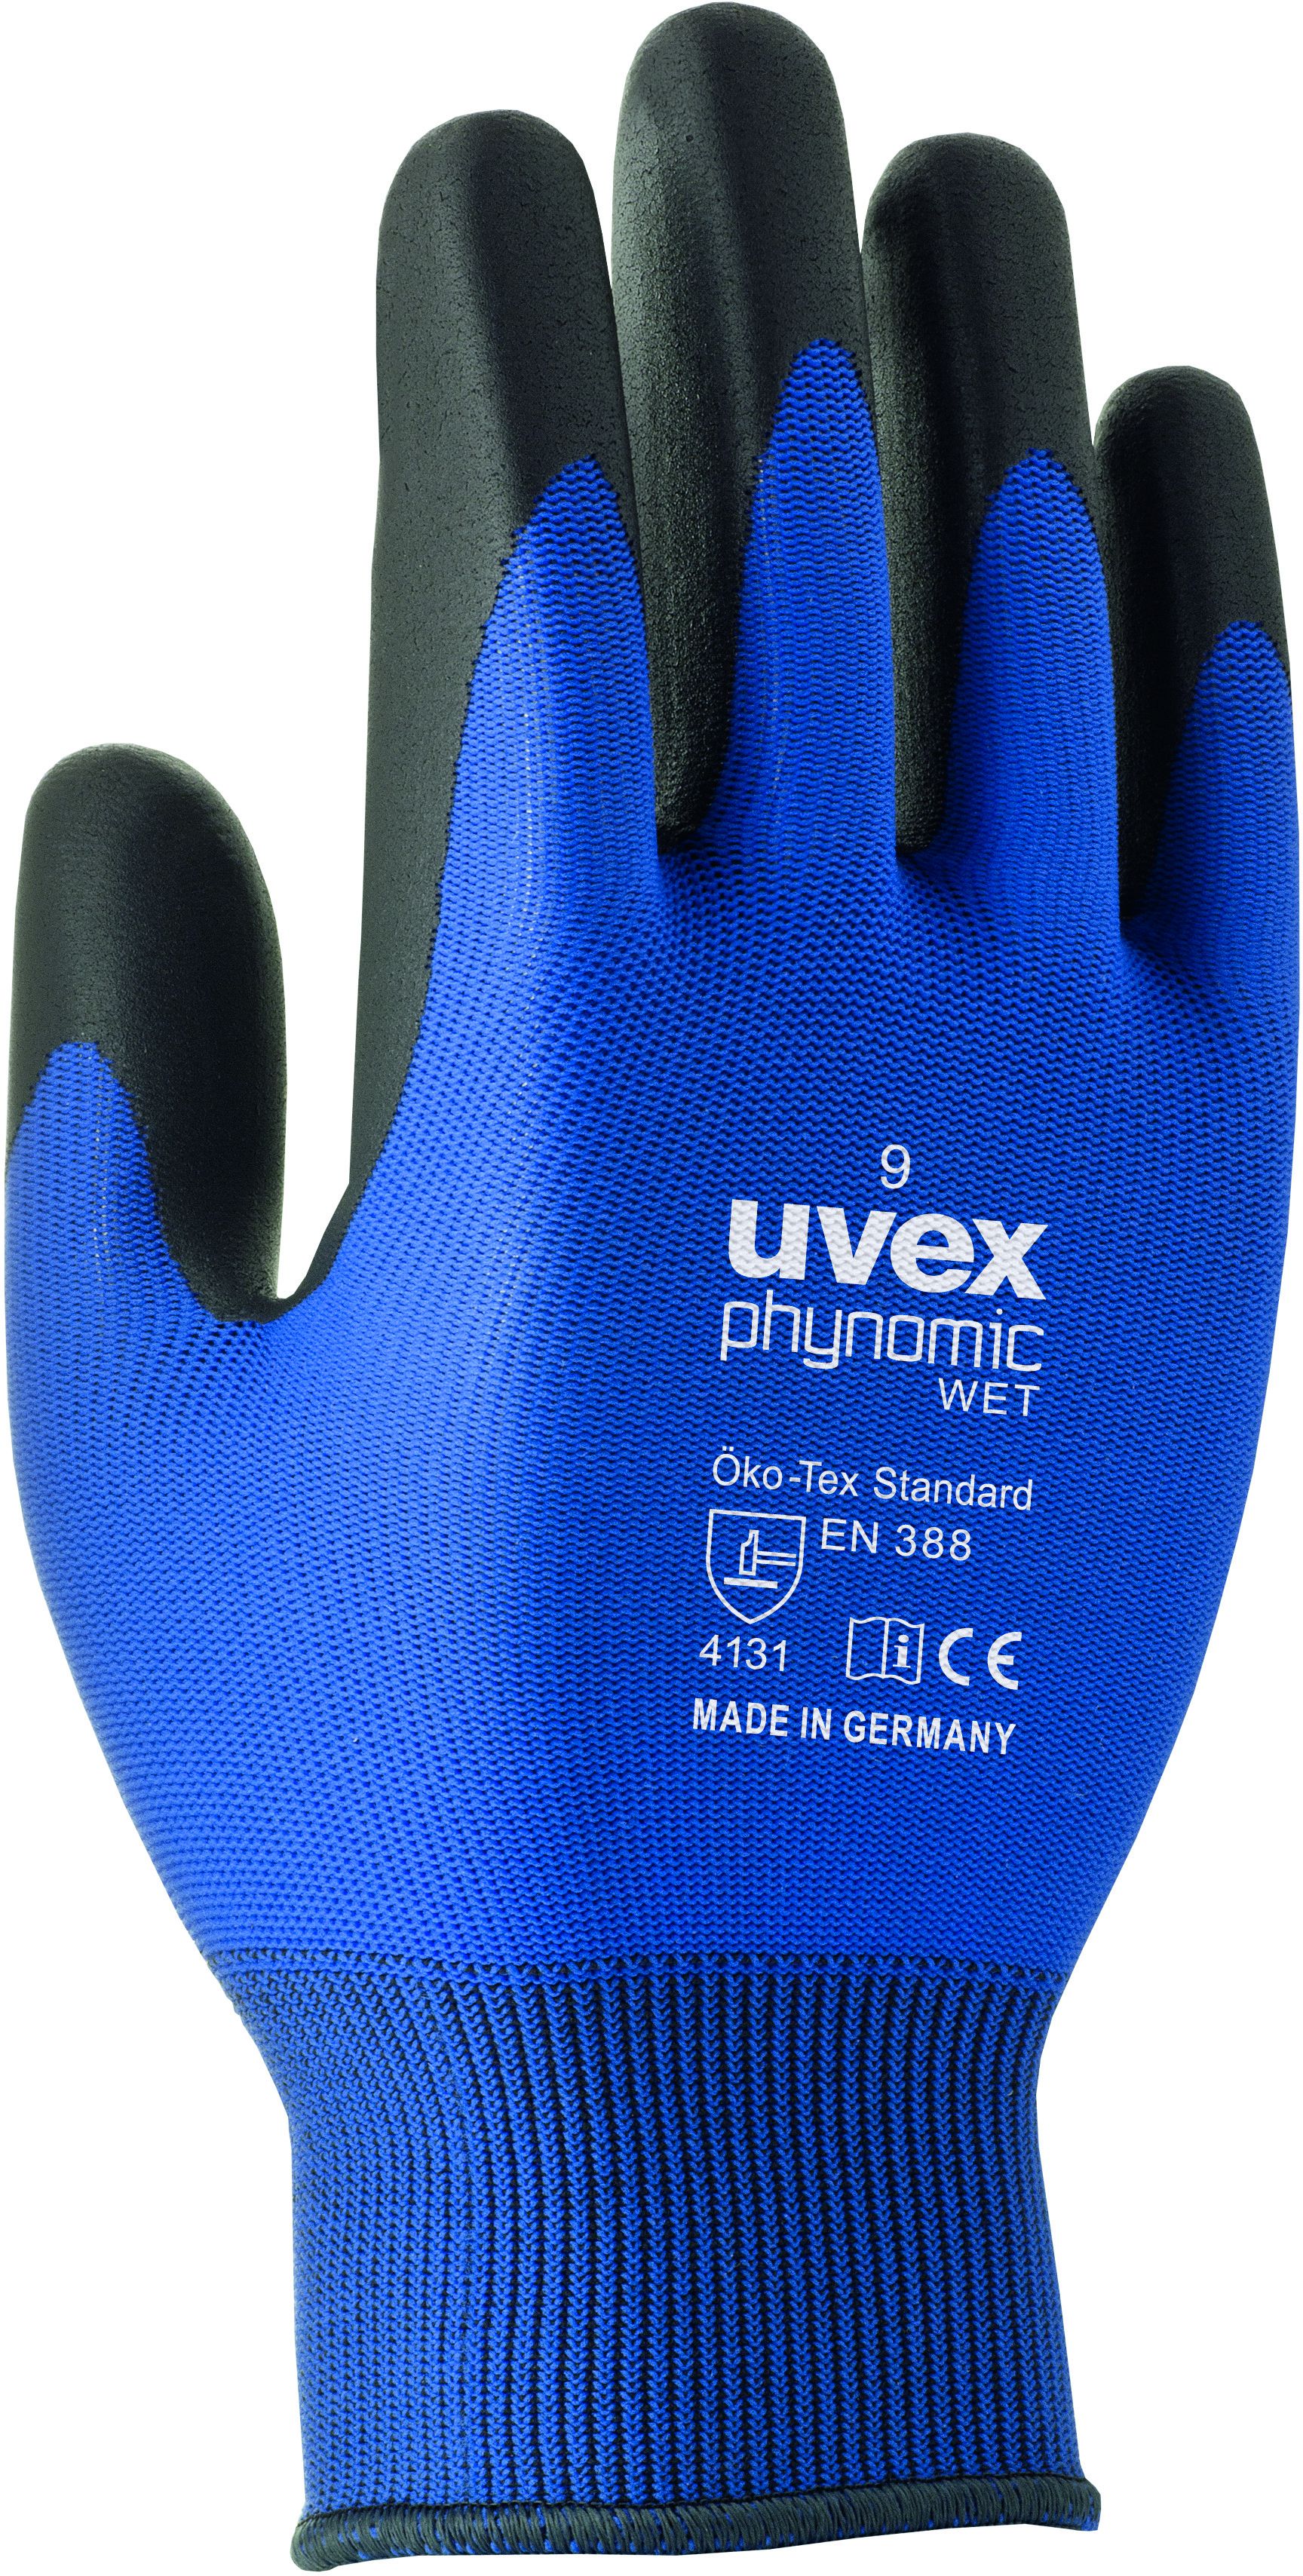 UVEX Arbeitshandschuh phynomic WET Gr. 7, blau/anthrazit, Art. 60060 - Arbeitsschutz